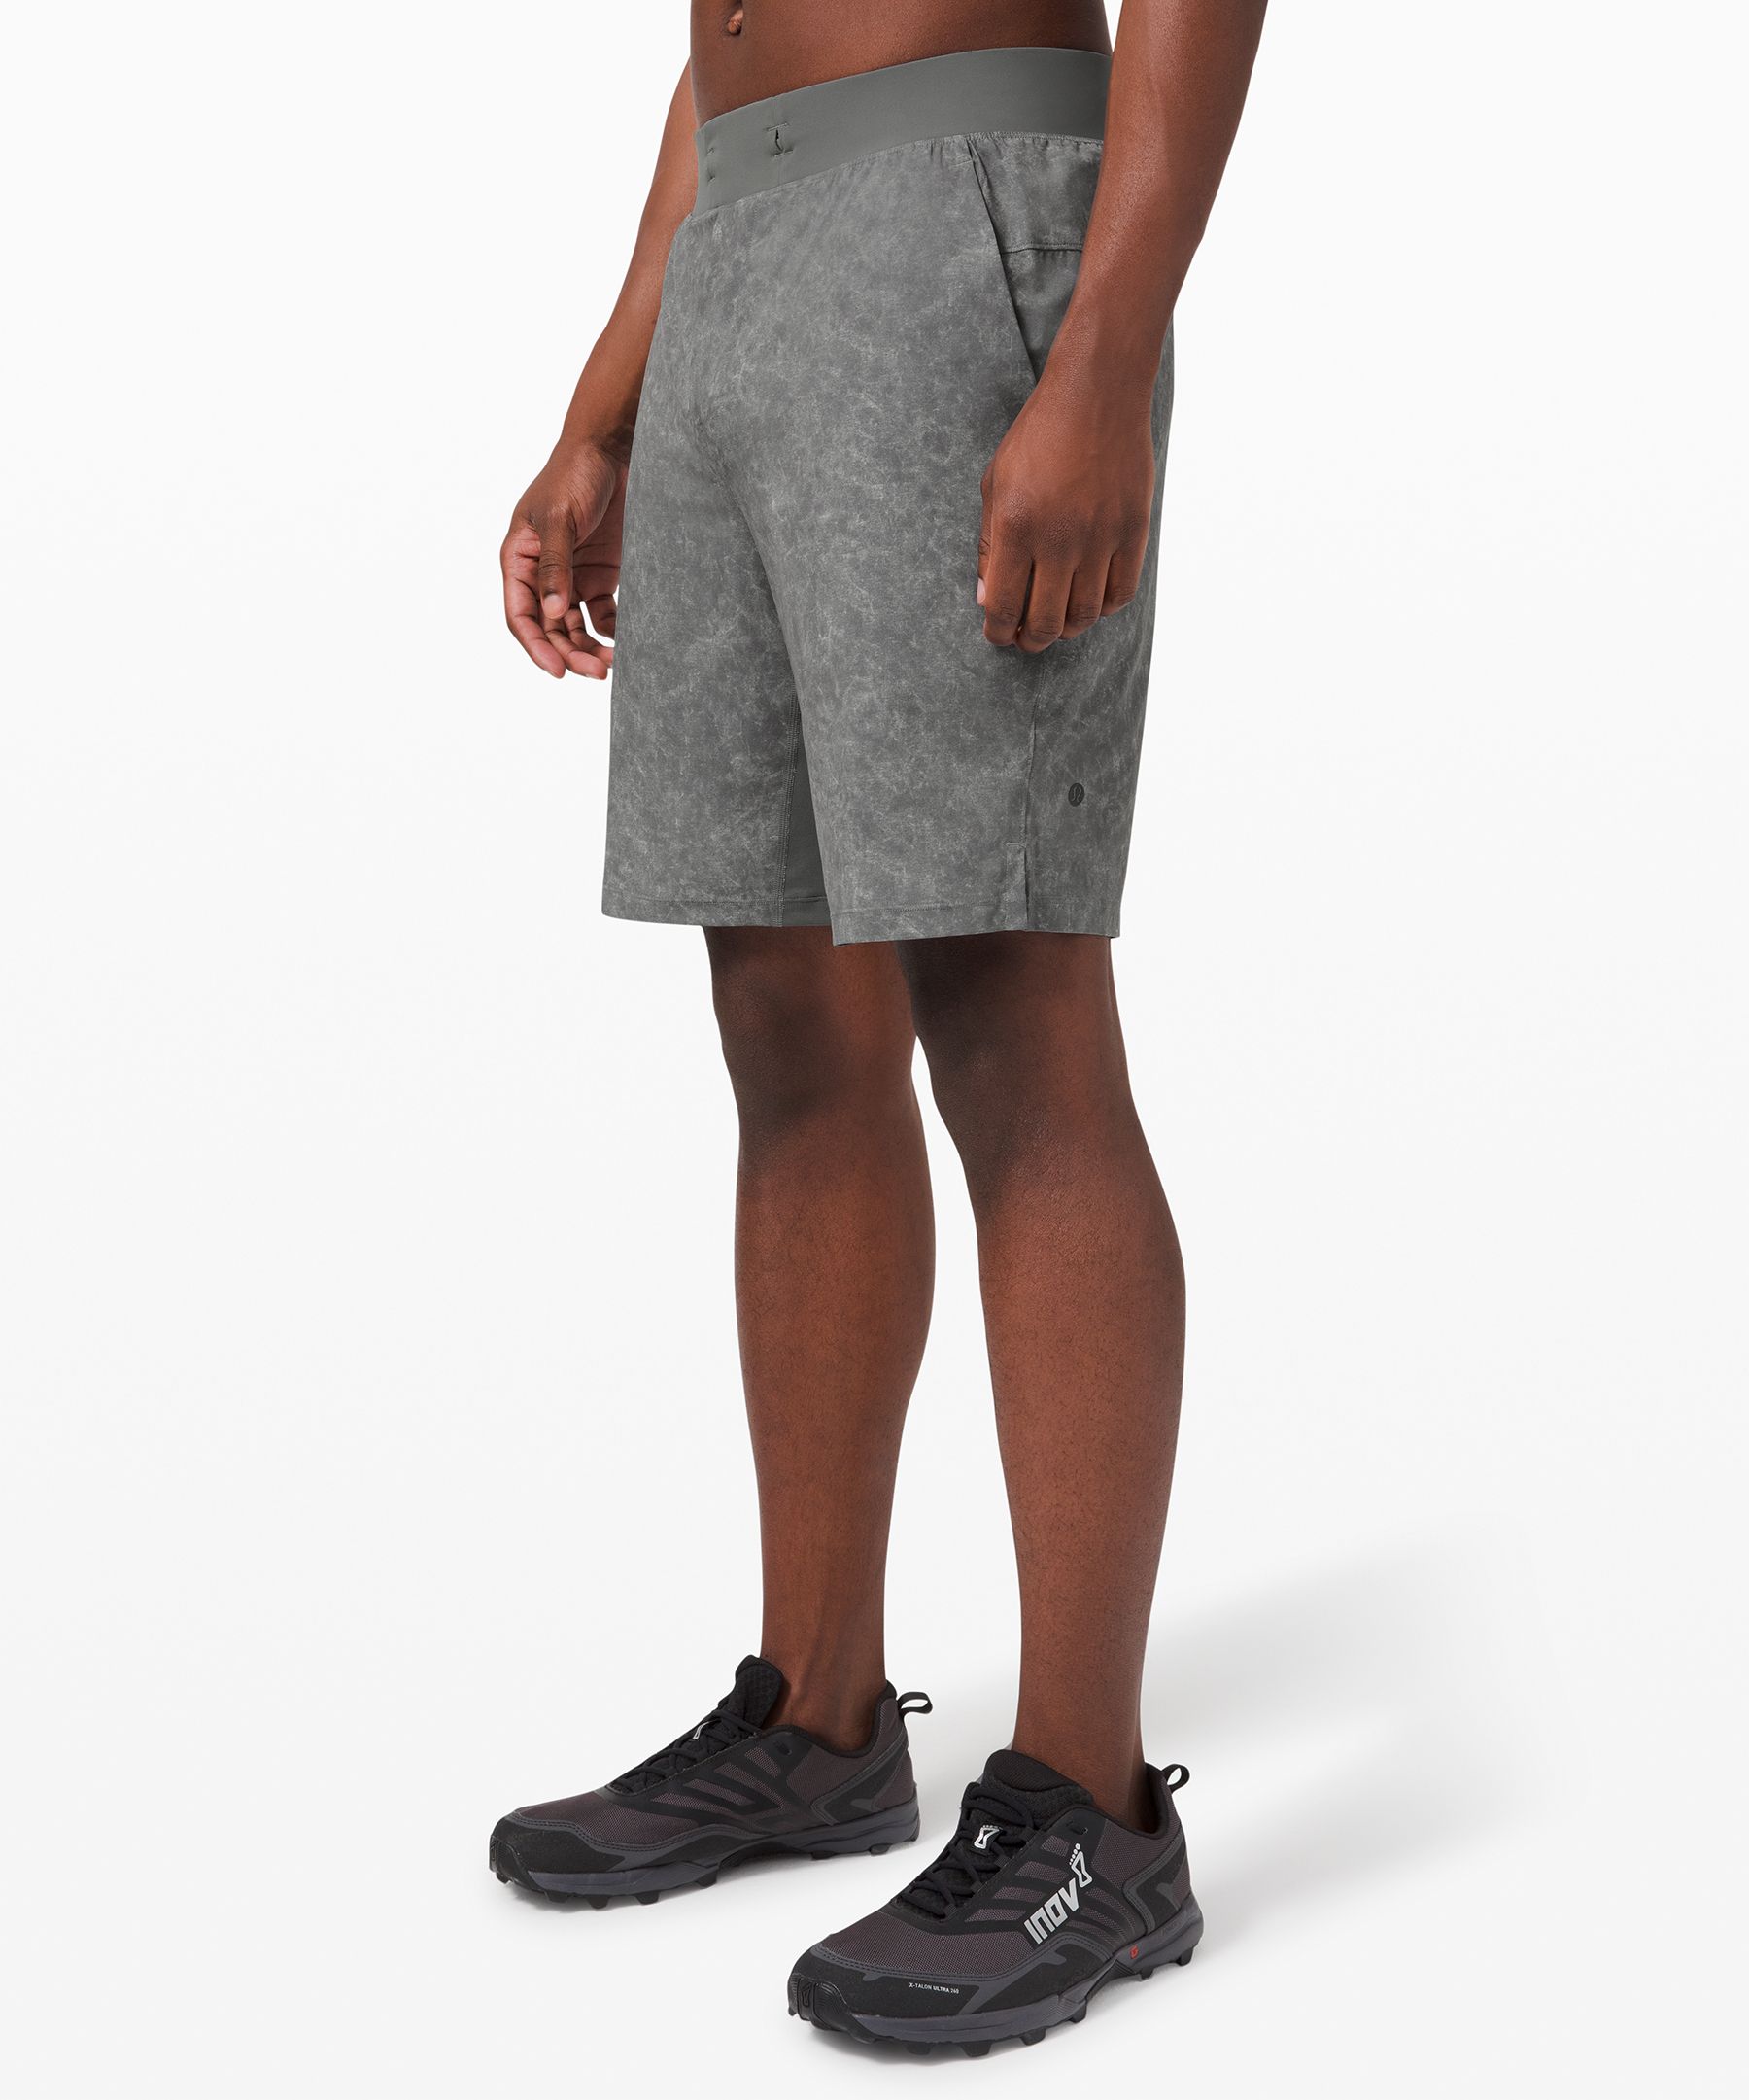 lululemon shorts with side pockets